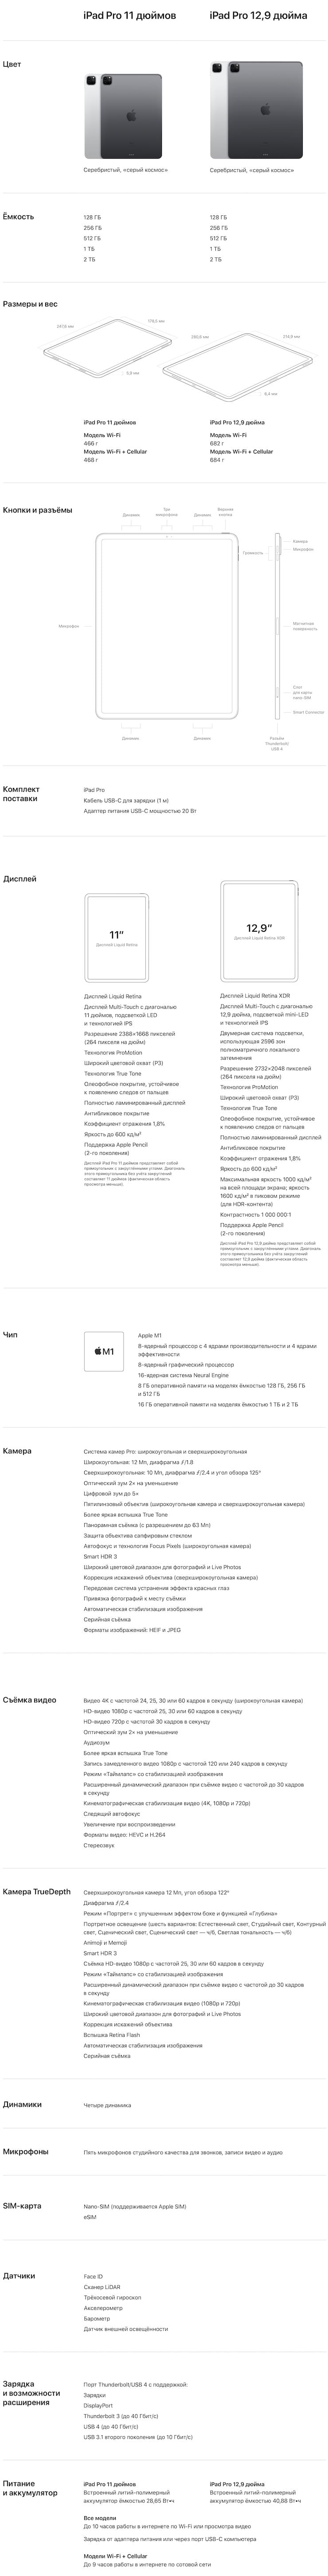 Обзор iPad Pro (M1) 2021 года: что нового + цены в России